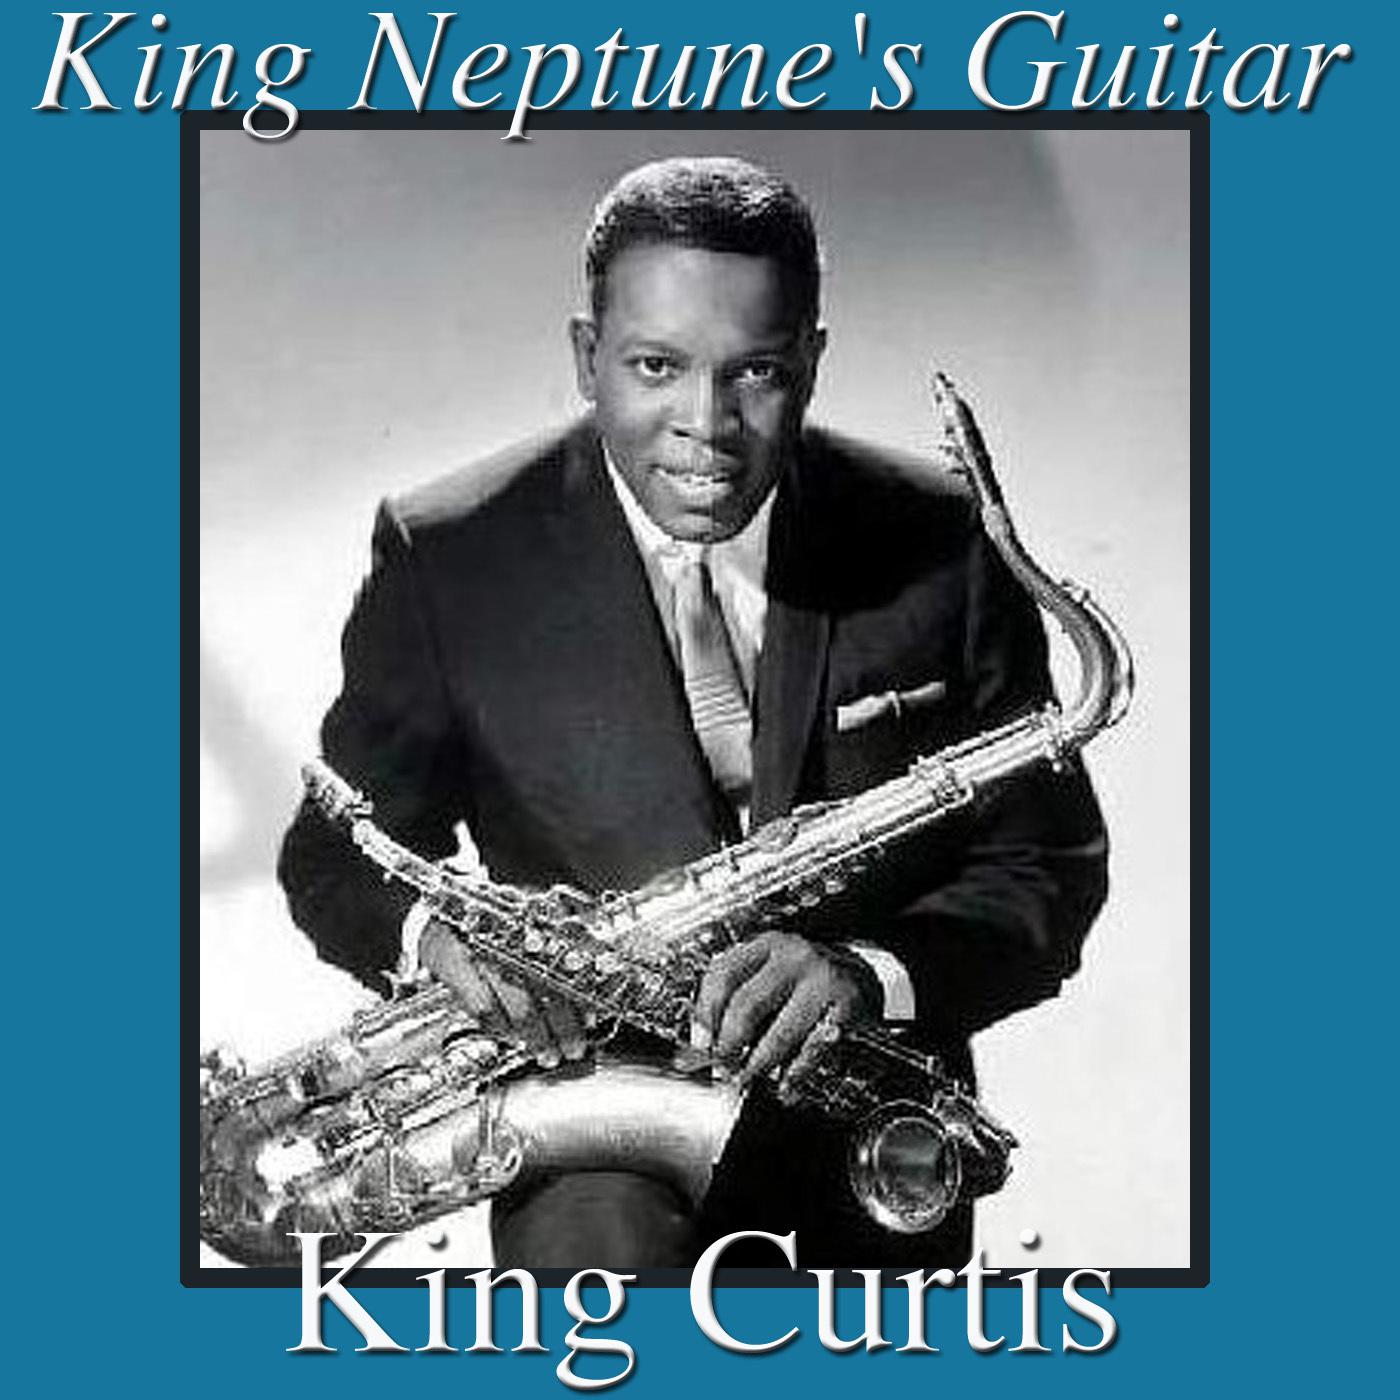 King Neptune's Guitar